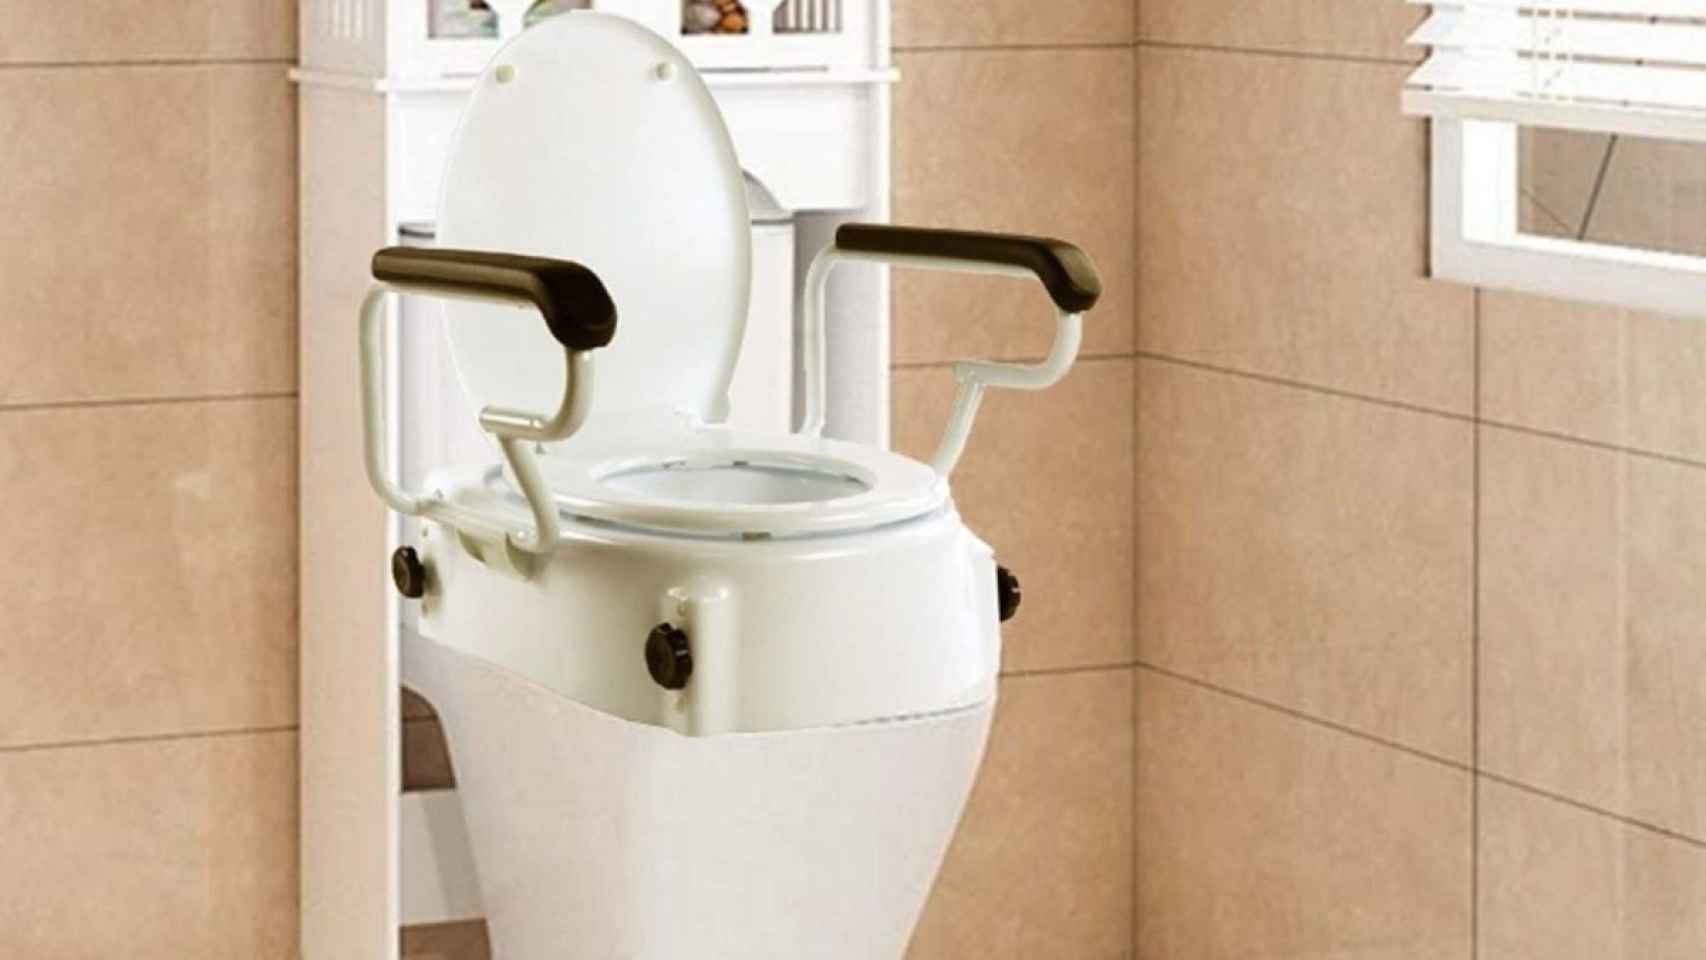 PEPE - Elevador WC Adulto con Tapa (15 cm de altura), Alzador WC